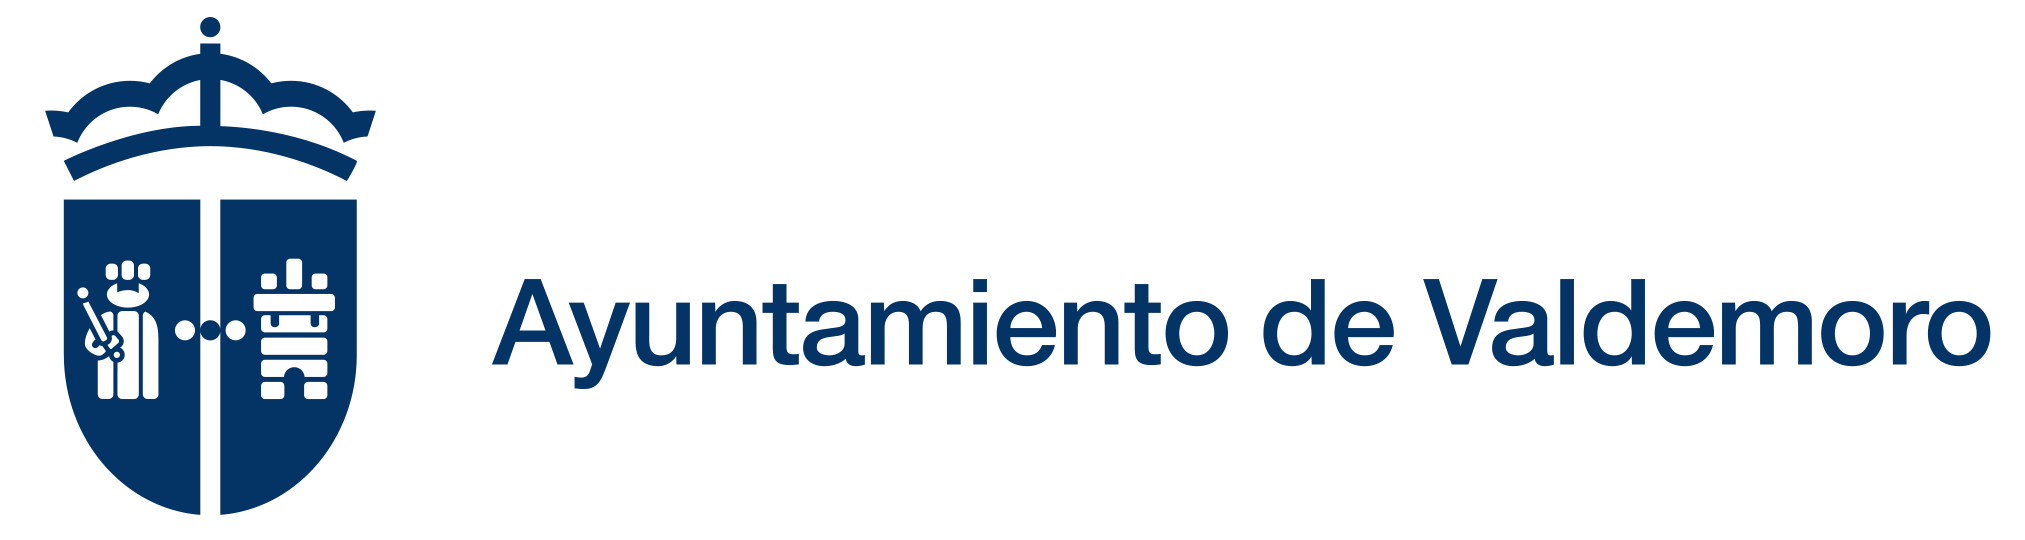 Logotipo del ayuntamiento